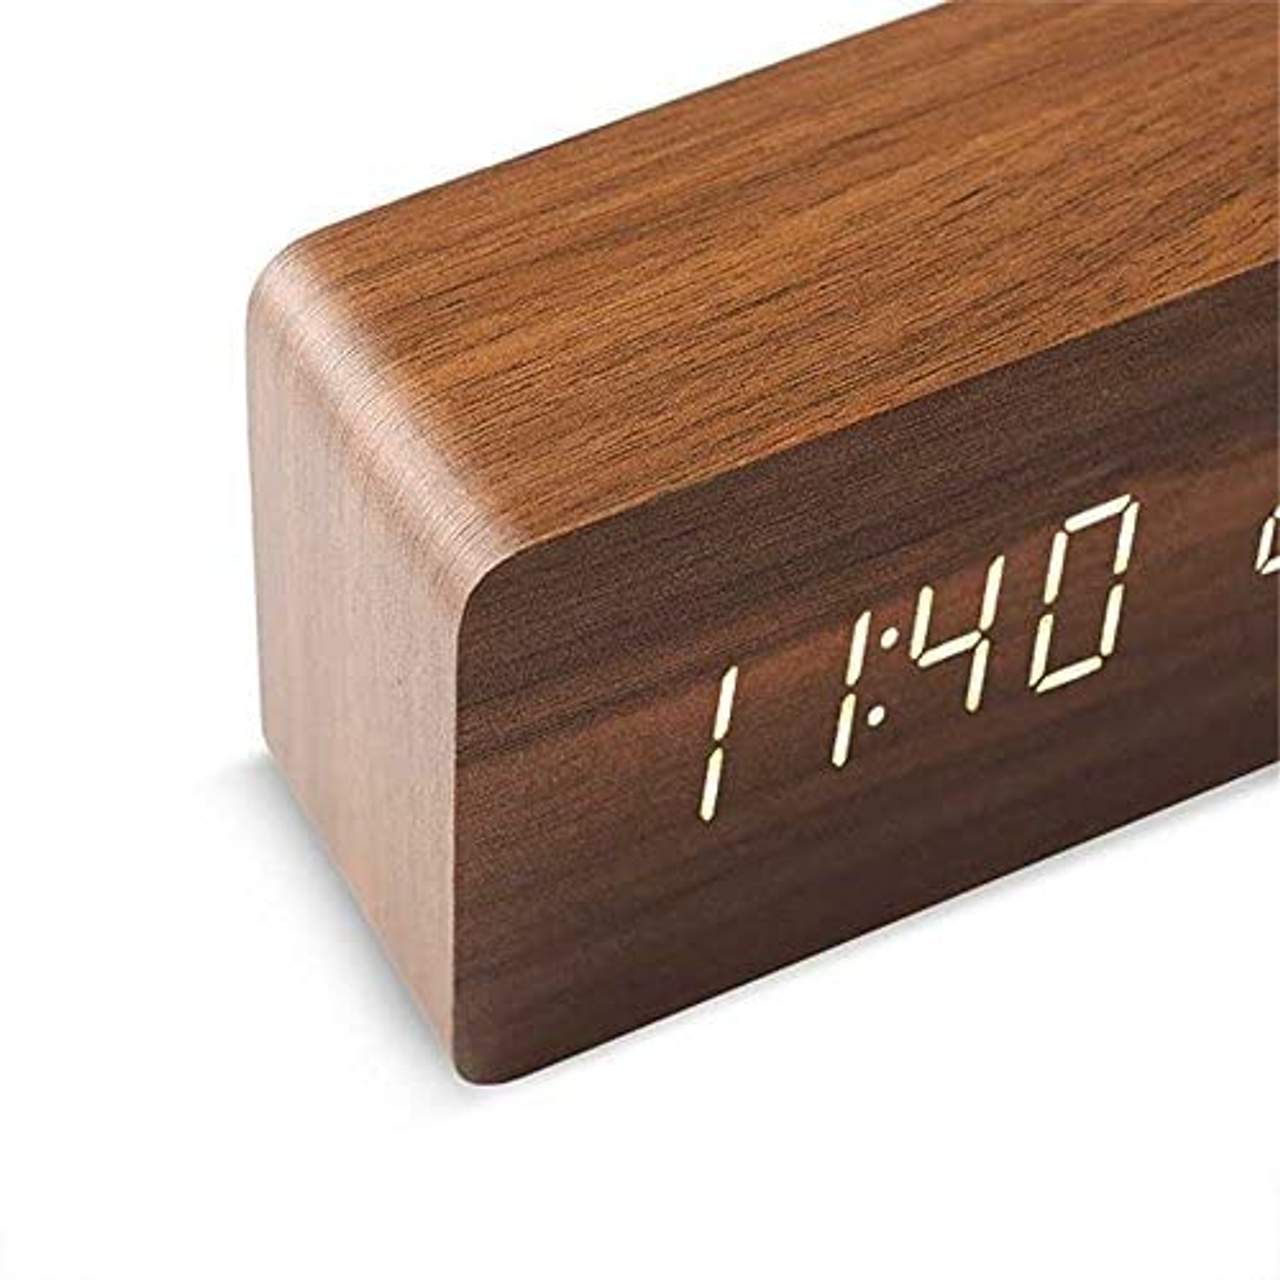 Queta LED Holz Wecker Digitalwecker Tisch Uhr Datum Temperatur Anzeige